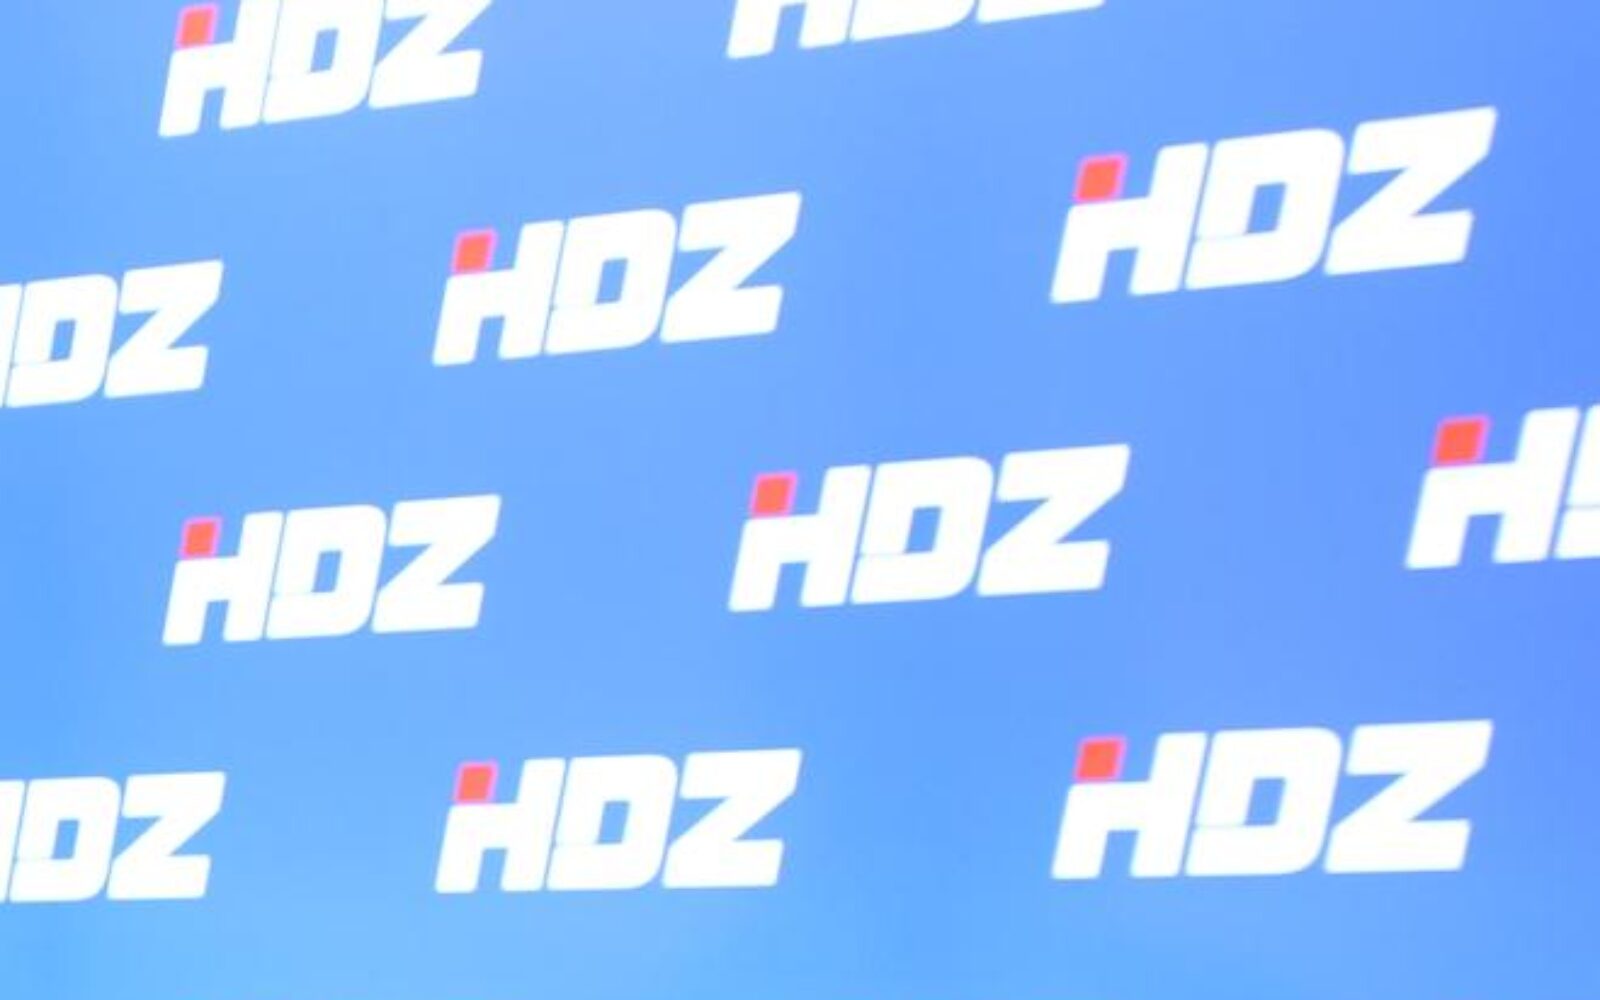 HDZ inicira promjenu imena ulice u Zagrebu - Poslovni dnevnik